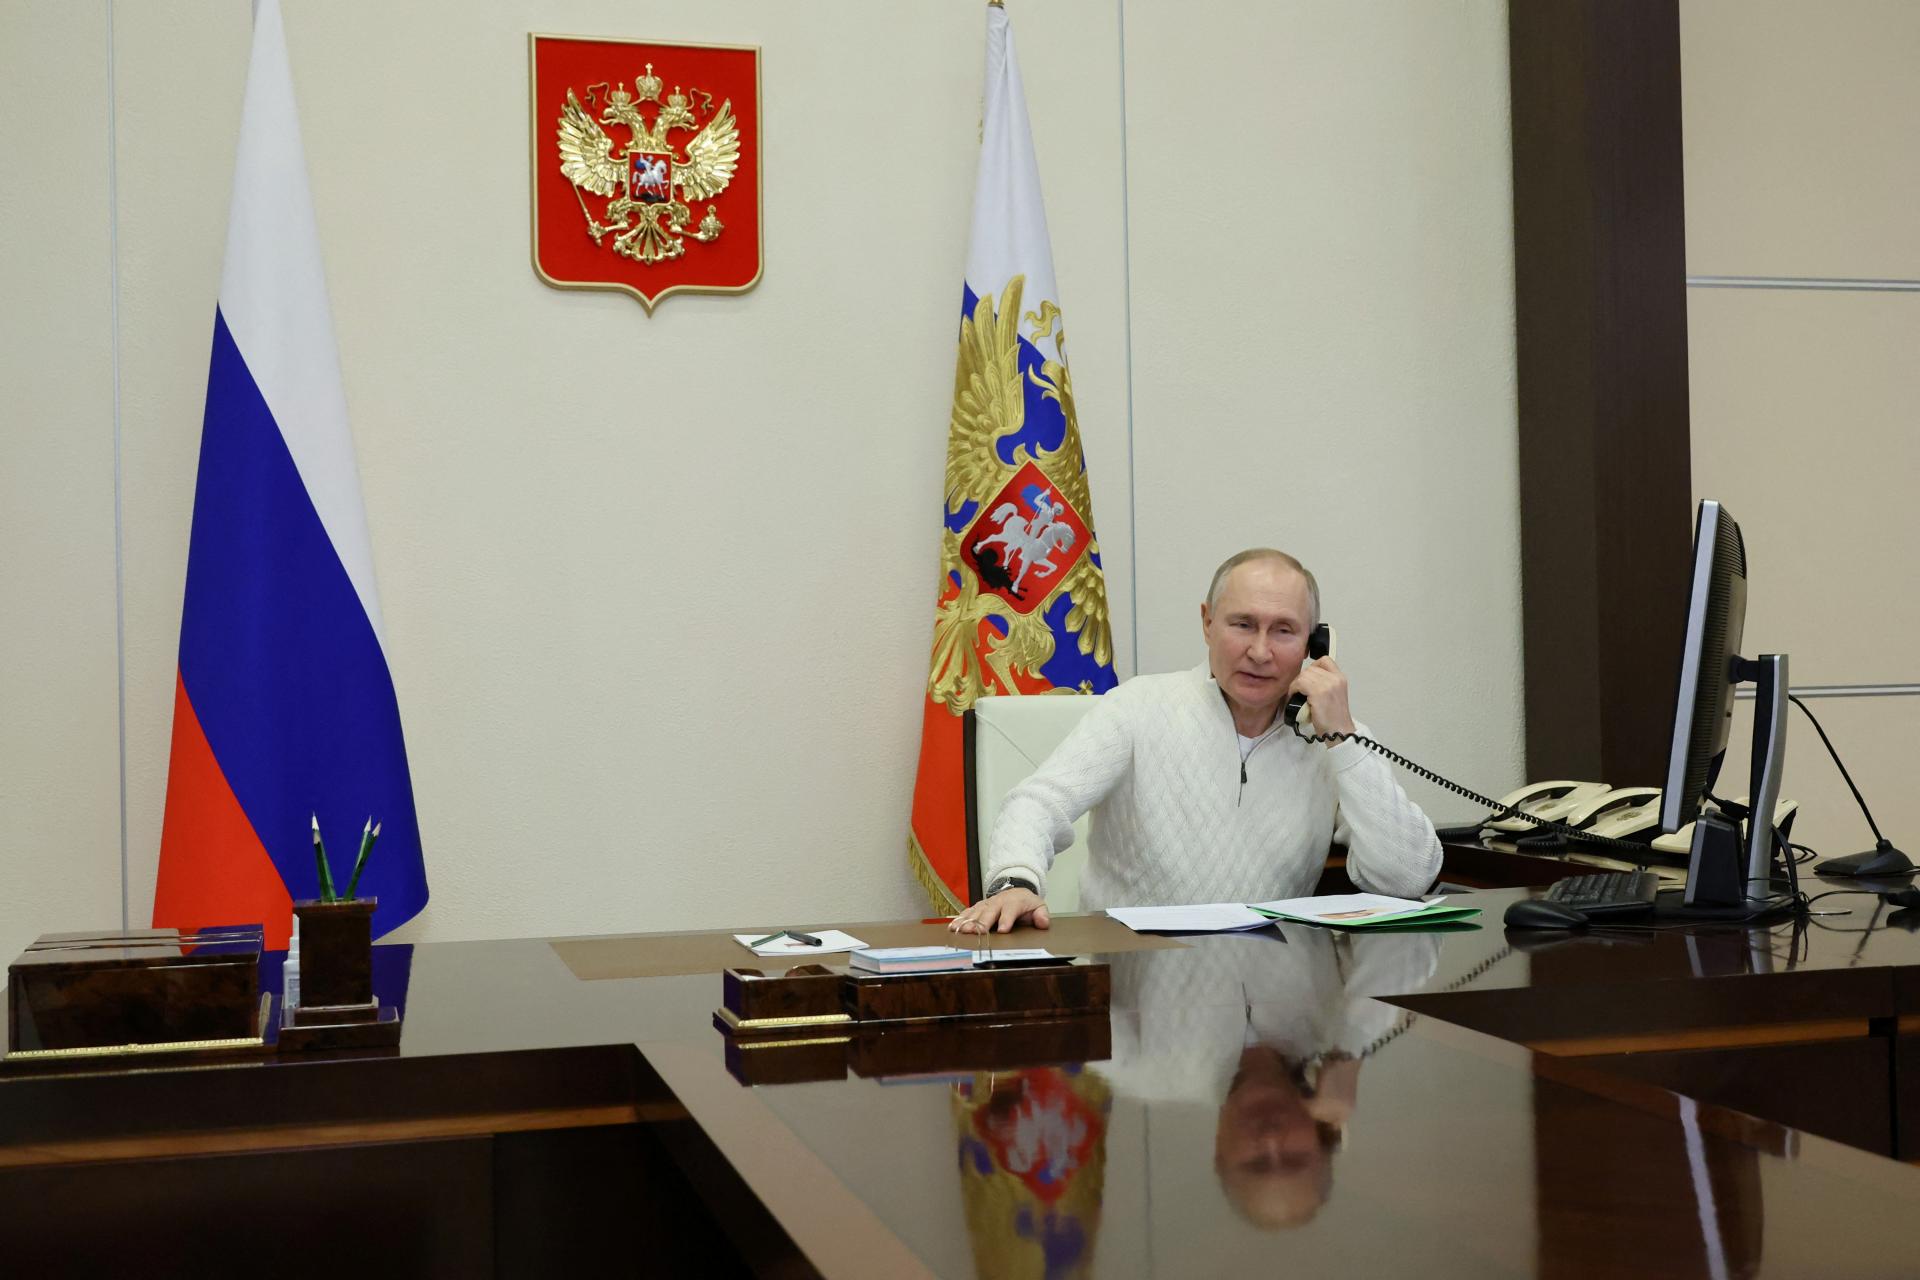 Putin: Situácia v anektovaných oblastiach je komplikovaná. Do roku 2030 by mali dosiahnuť celoruskú úroveň